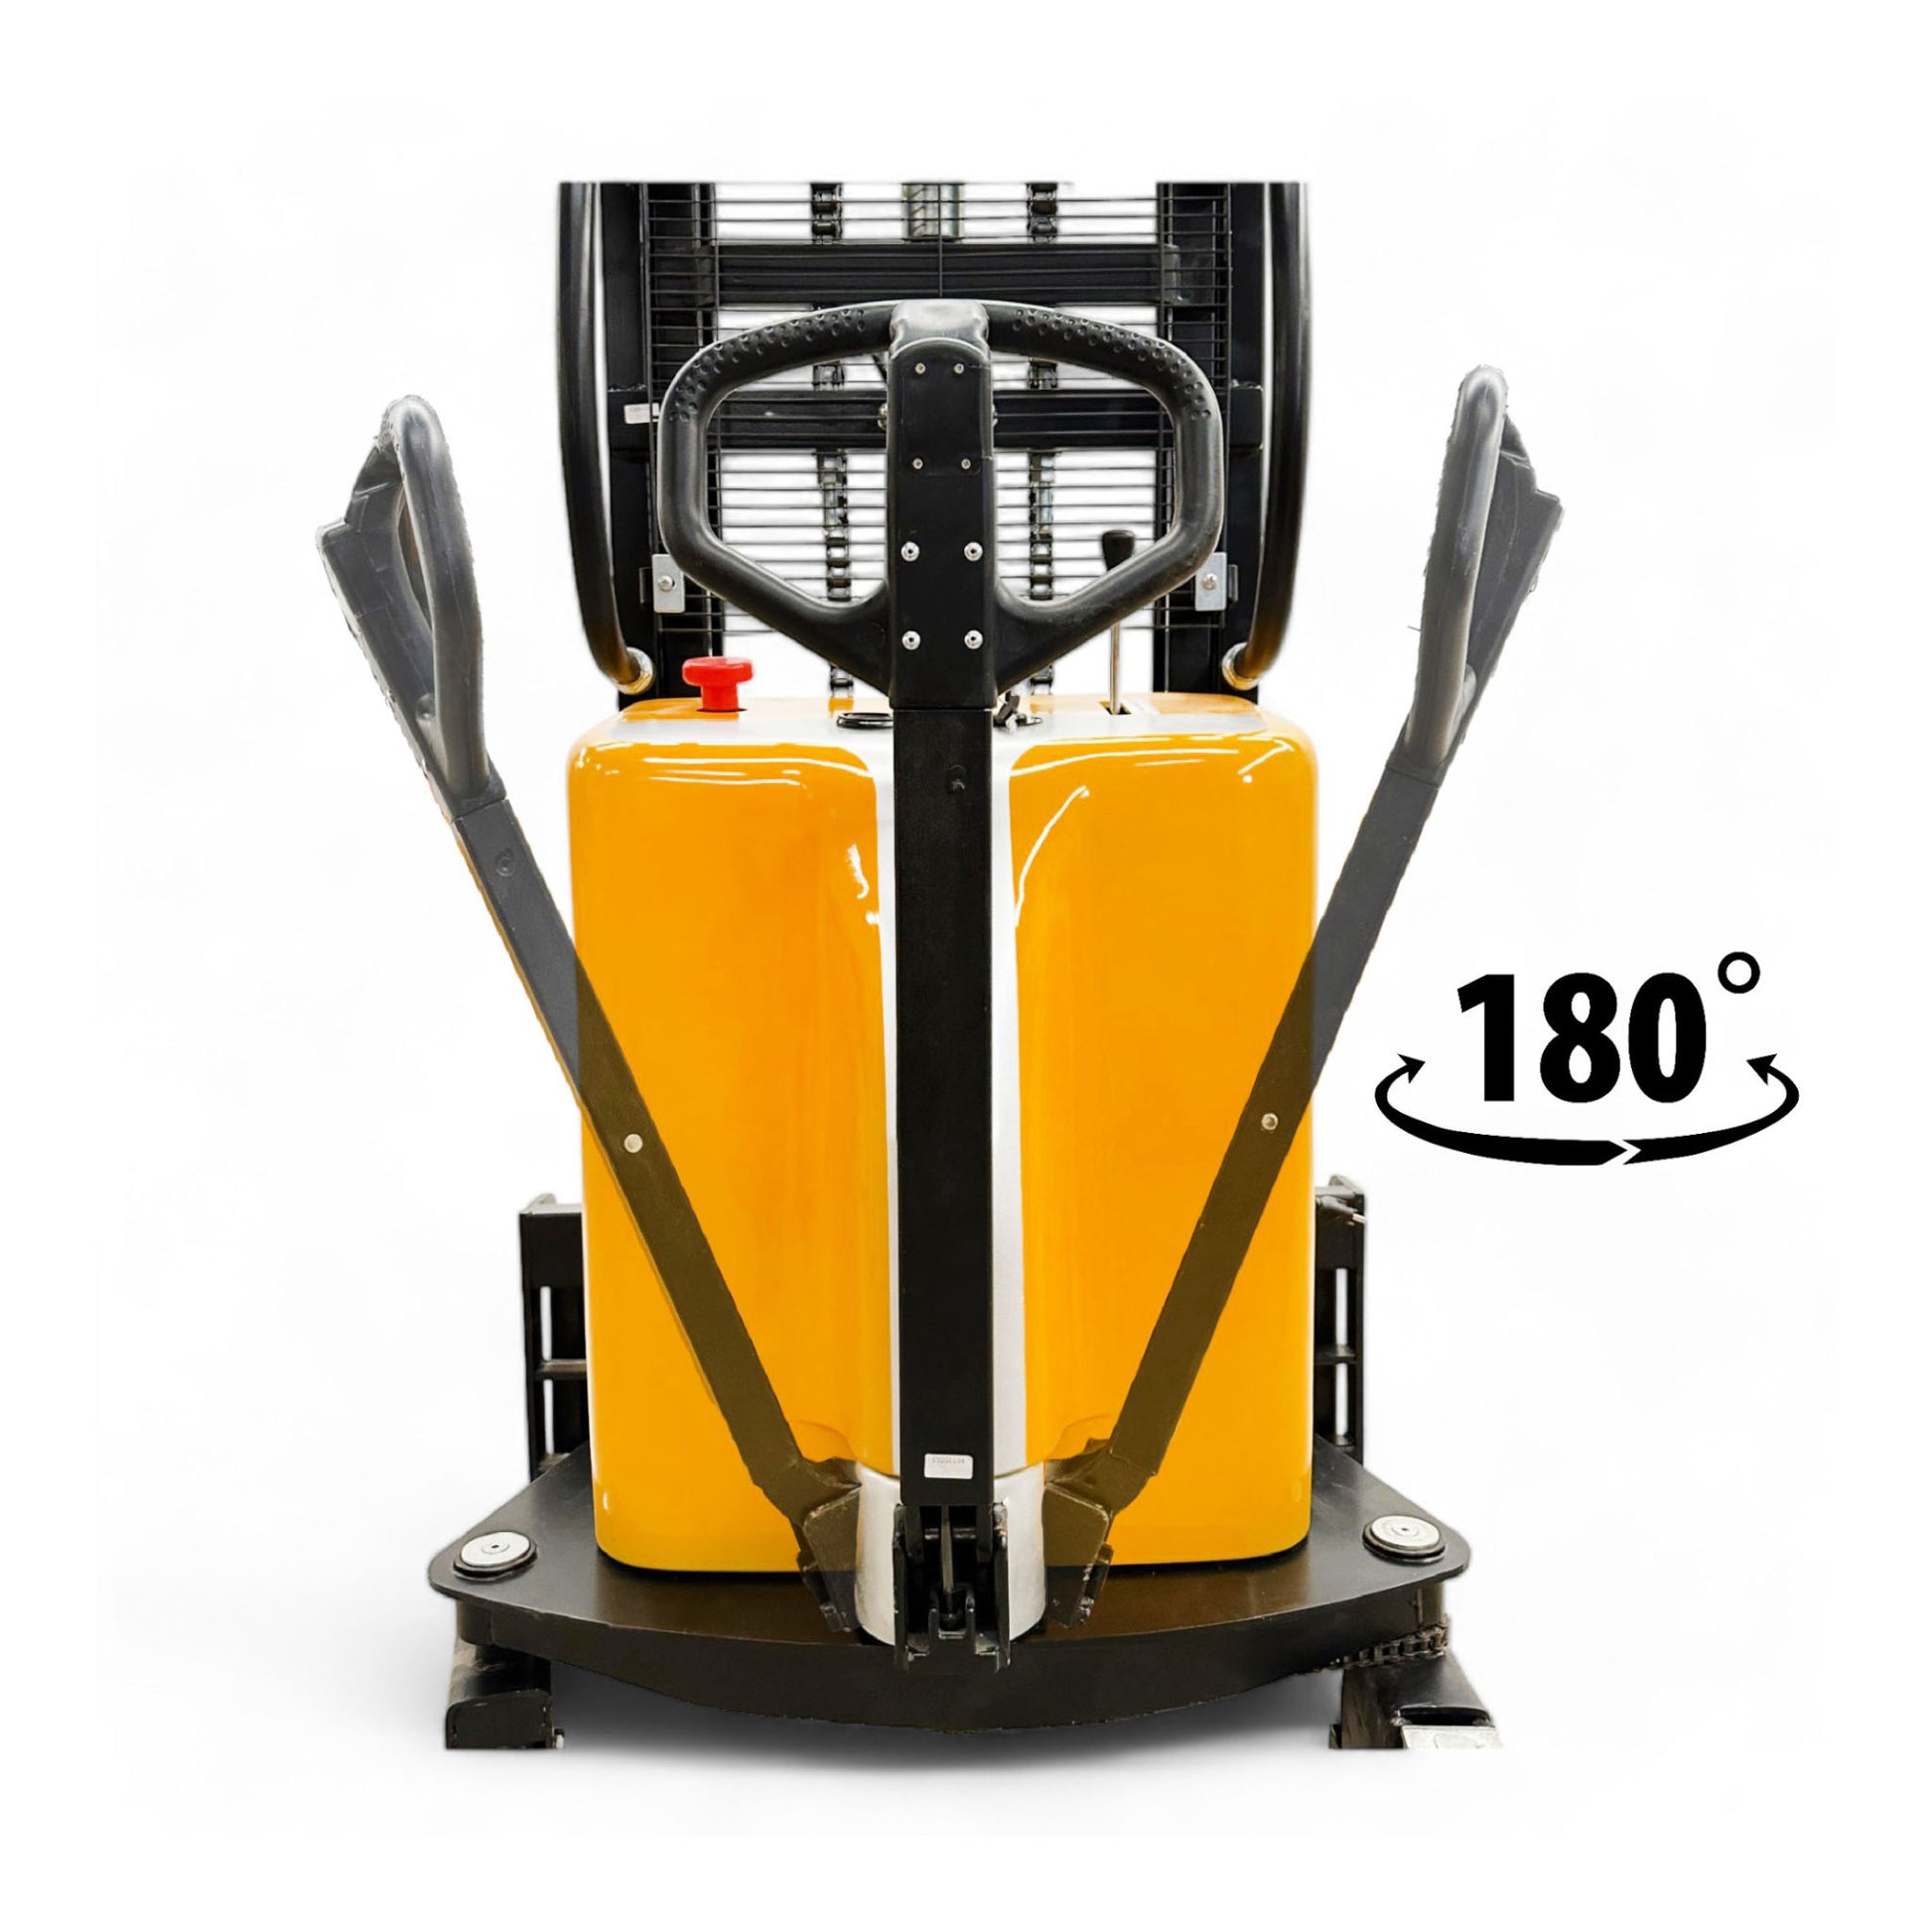 EMS1520 - Apilador semieléctrico de patas delgadas 1500 kg (3307 lbs) + 78'' de capacidad